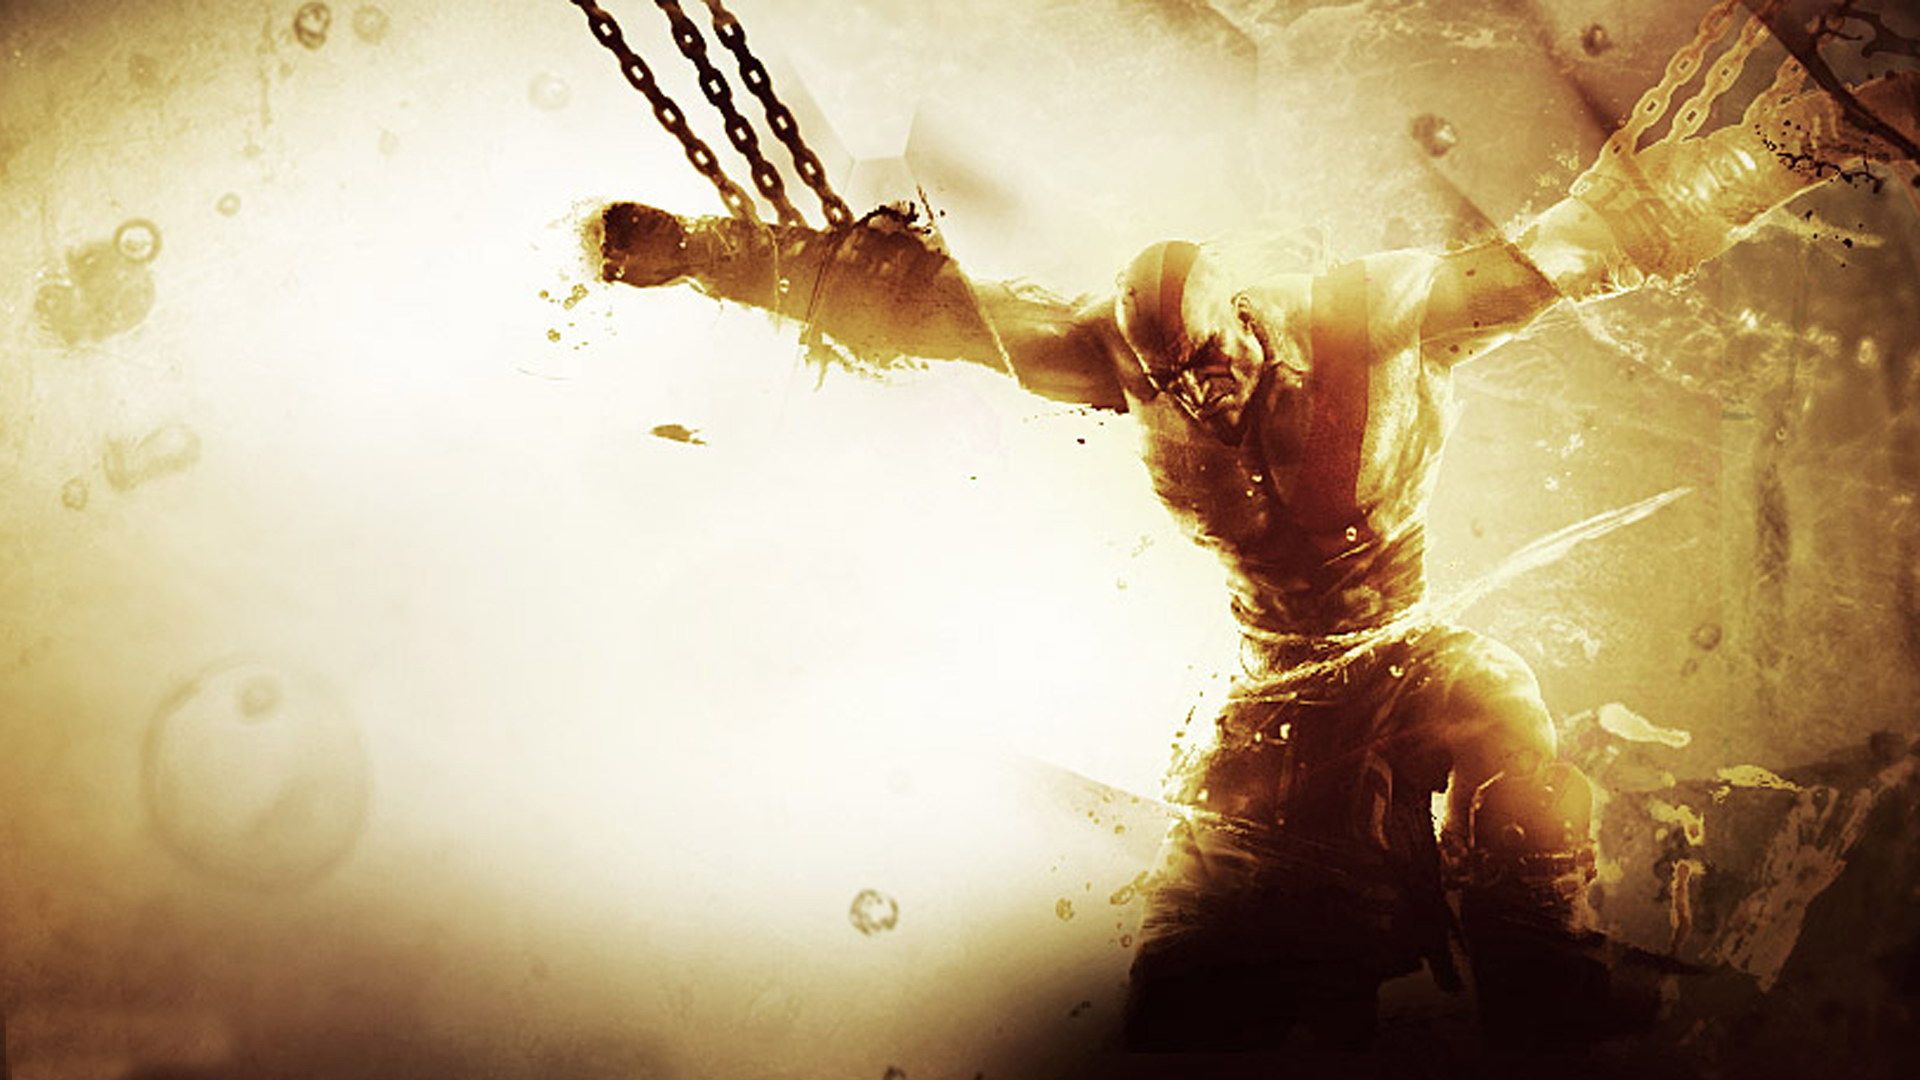 God of War III, Kratos Eyes HD desktop wallpaper, High Definition 1920x1080